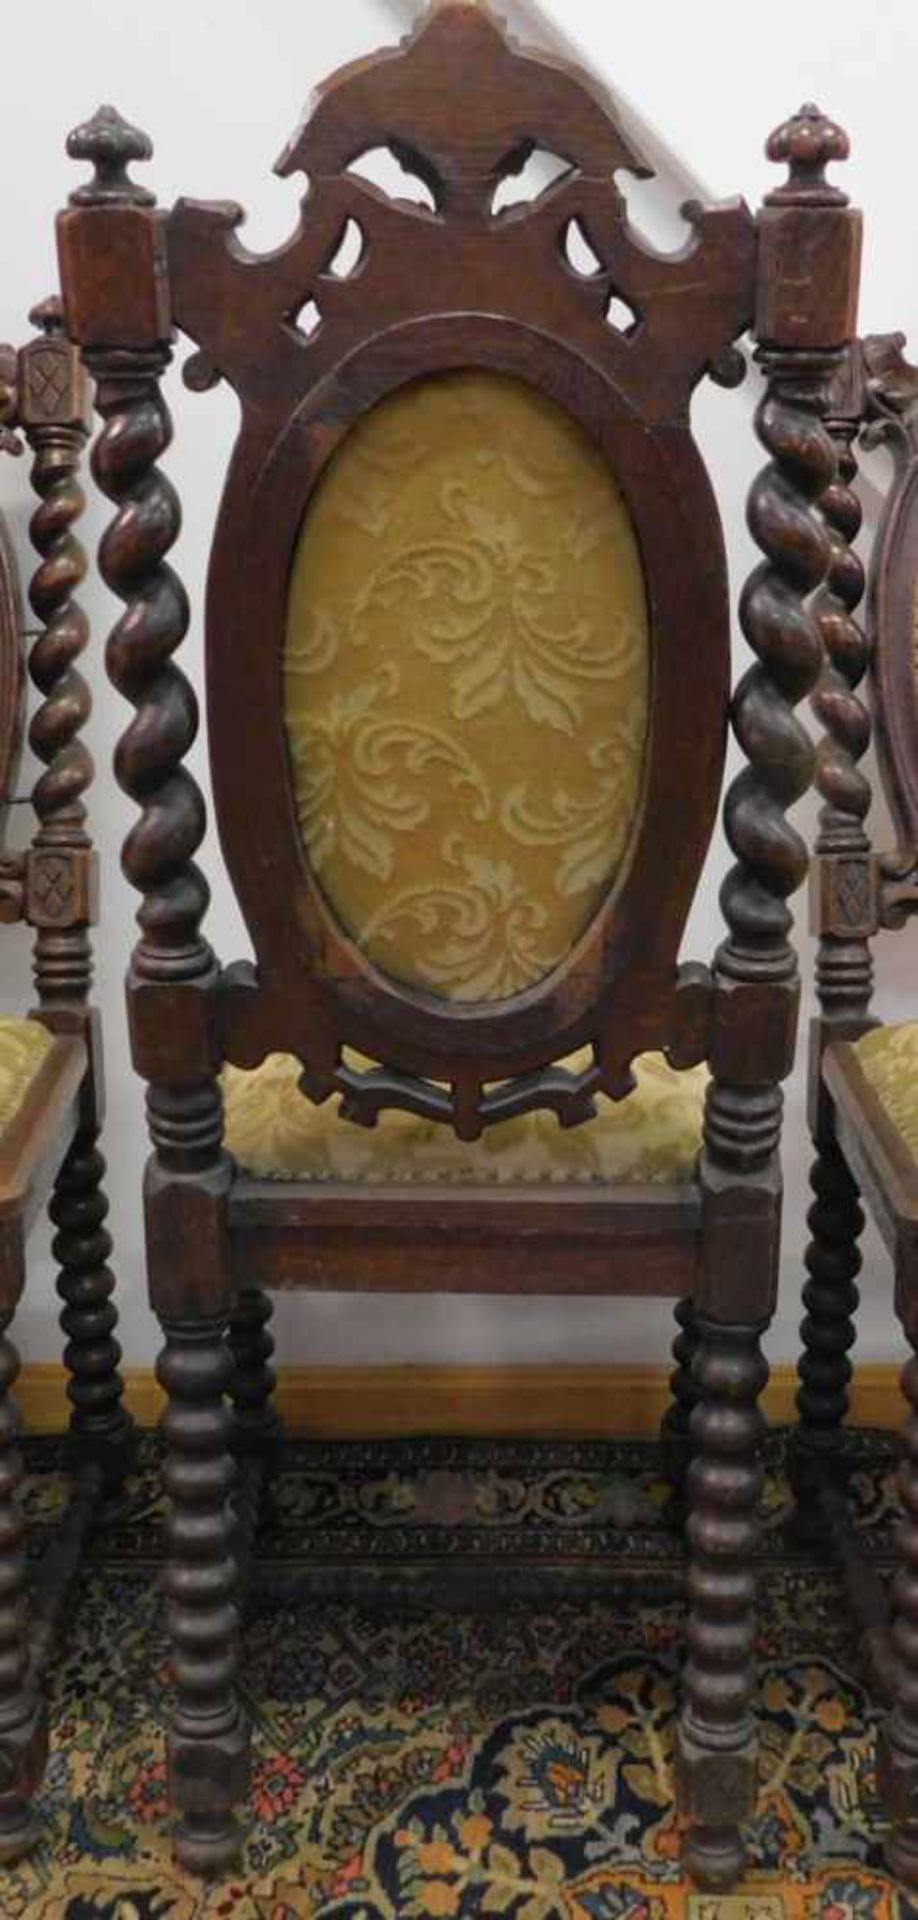 4 Stühle, Historismus um 1880, Eiche, PrunkausführungHochdekorative Eichenstühle, reich - Bild 4 aus 4